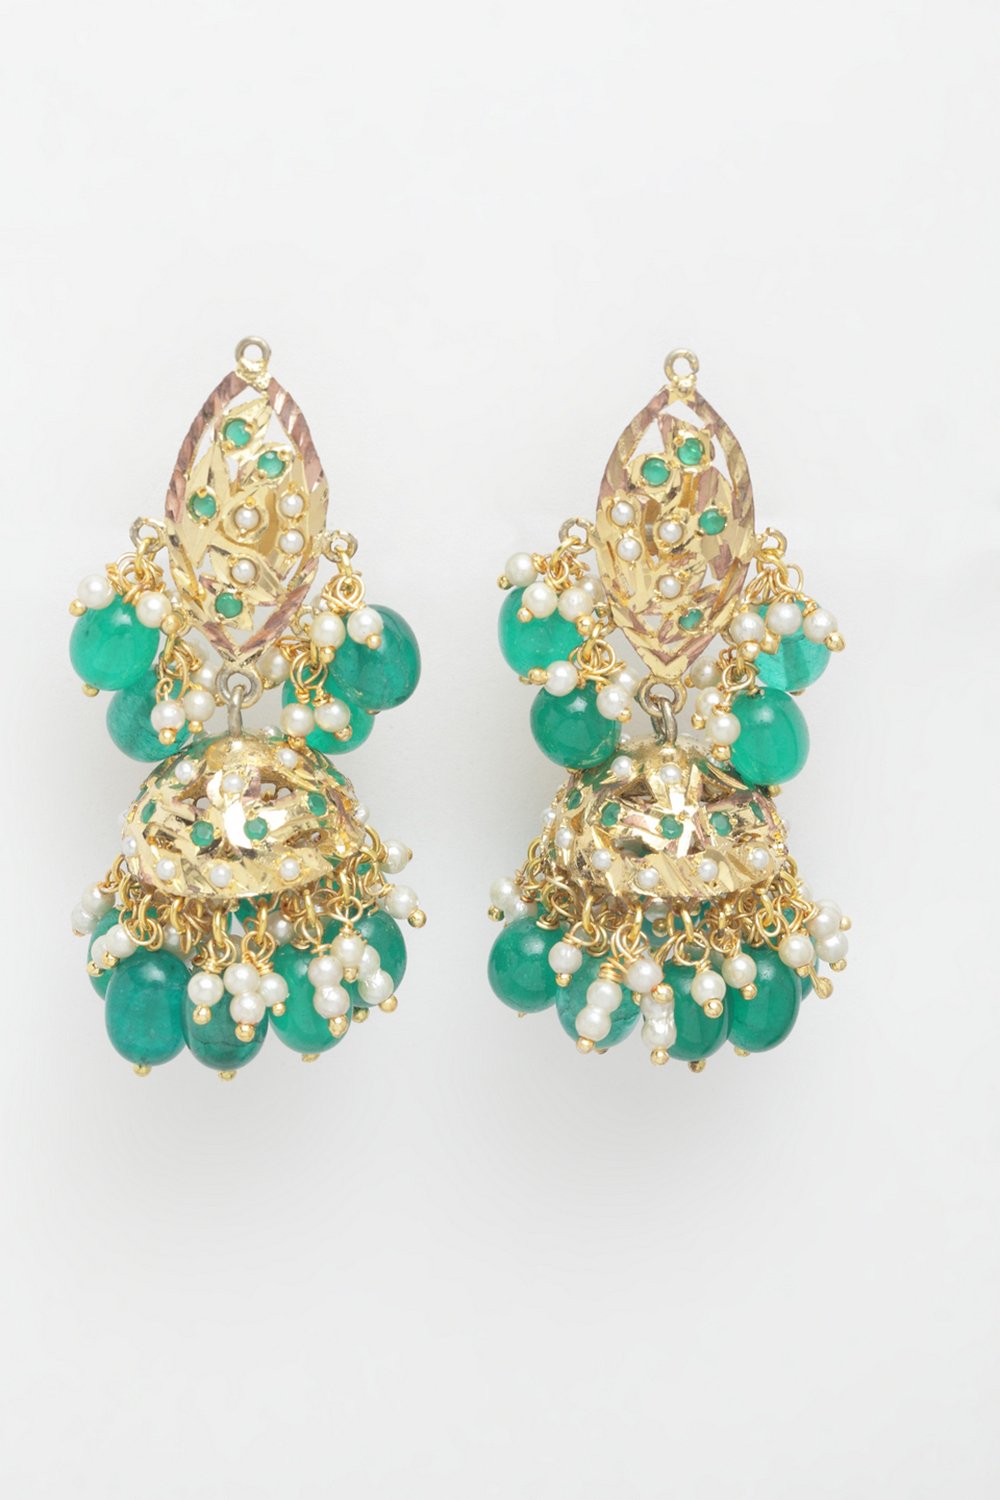 Shop Women's Sterling Silver Jhumka Earrings Online